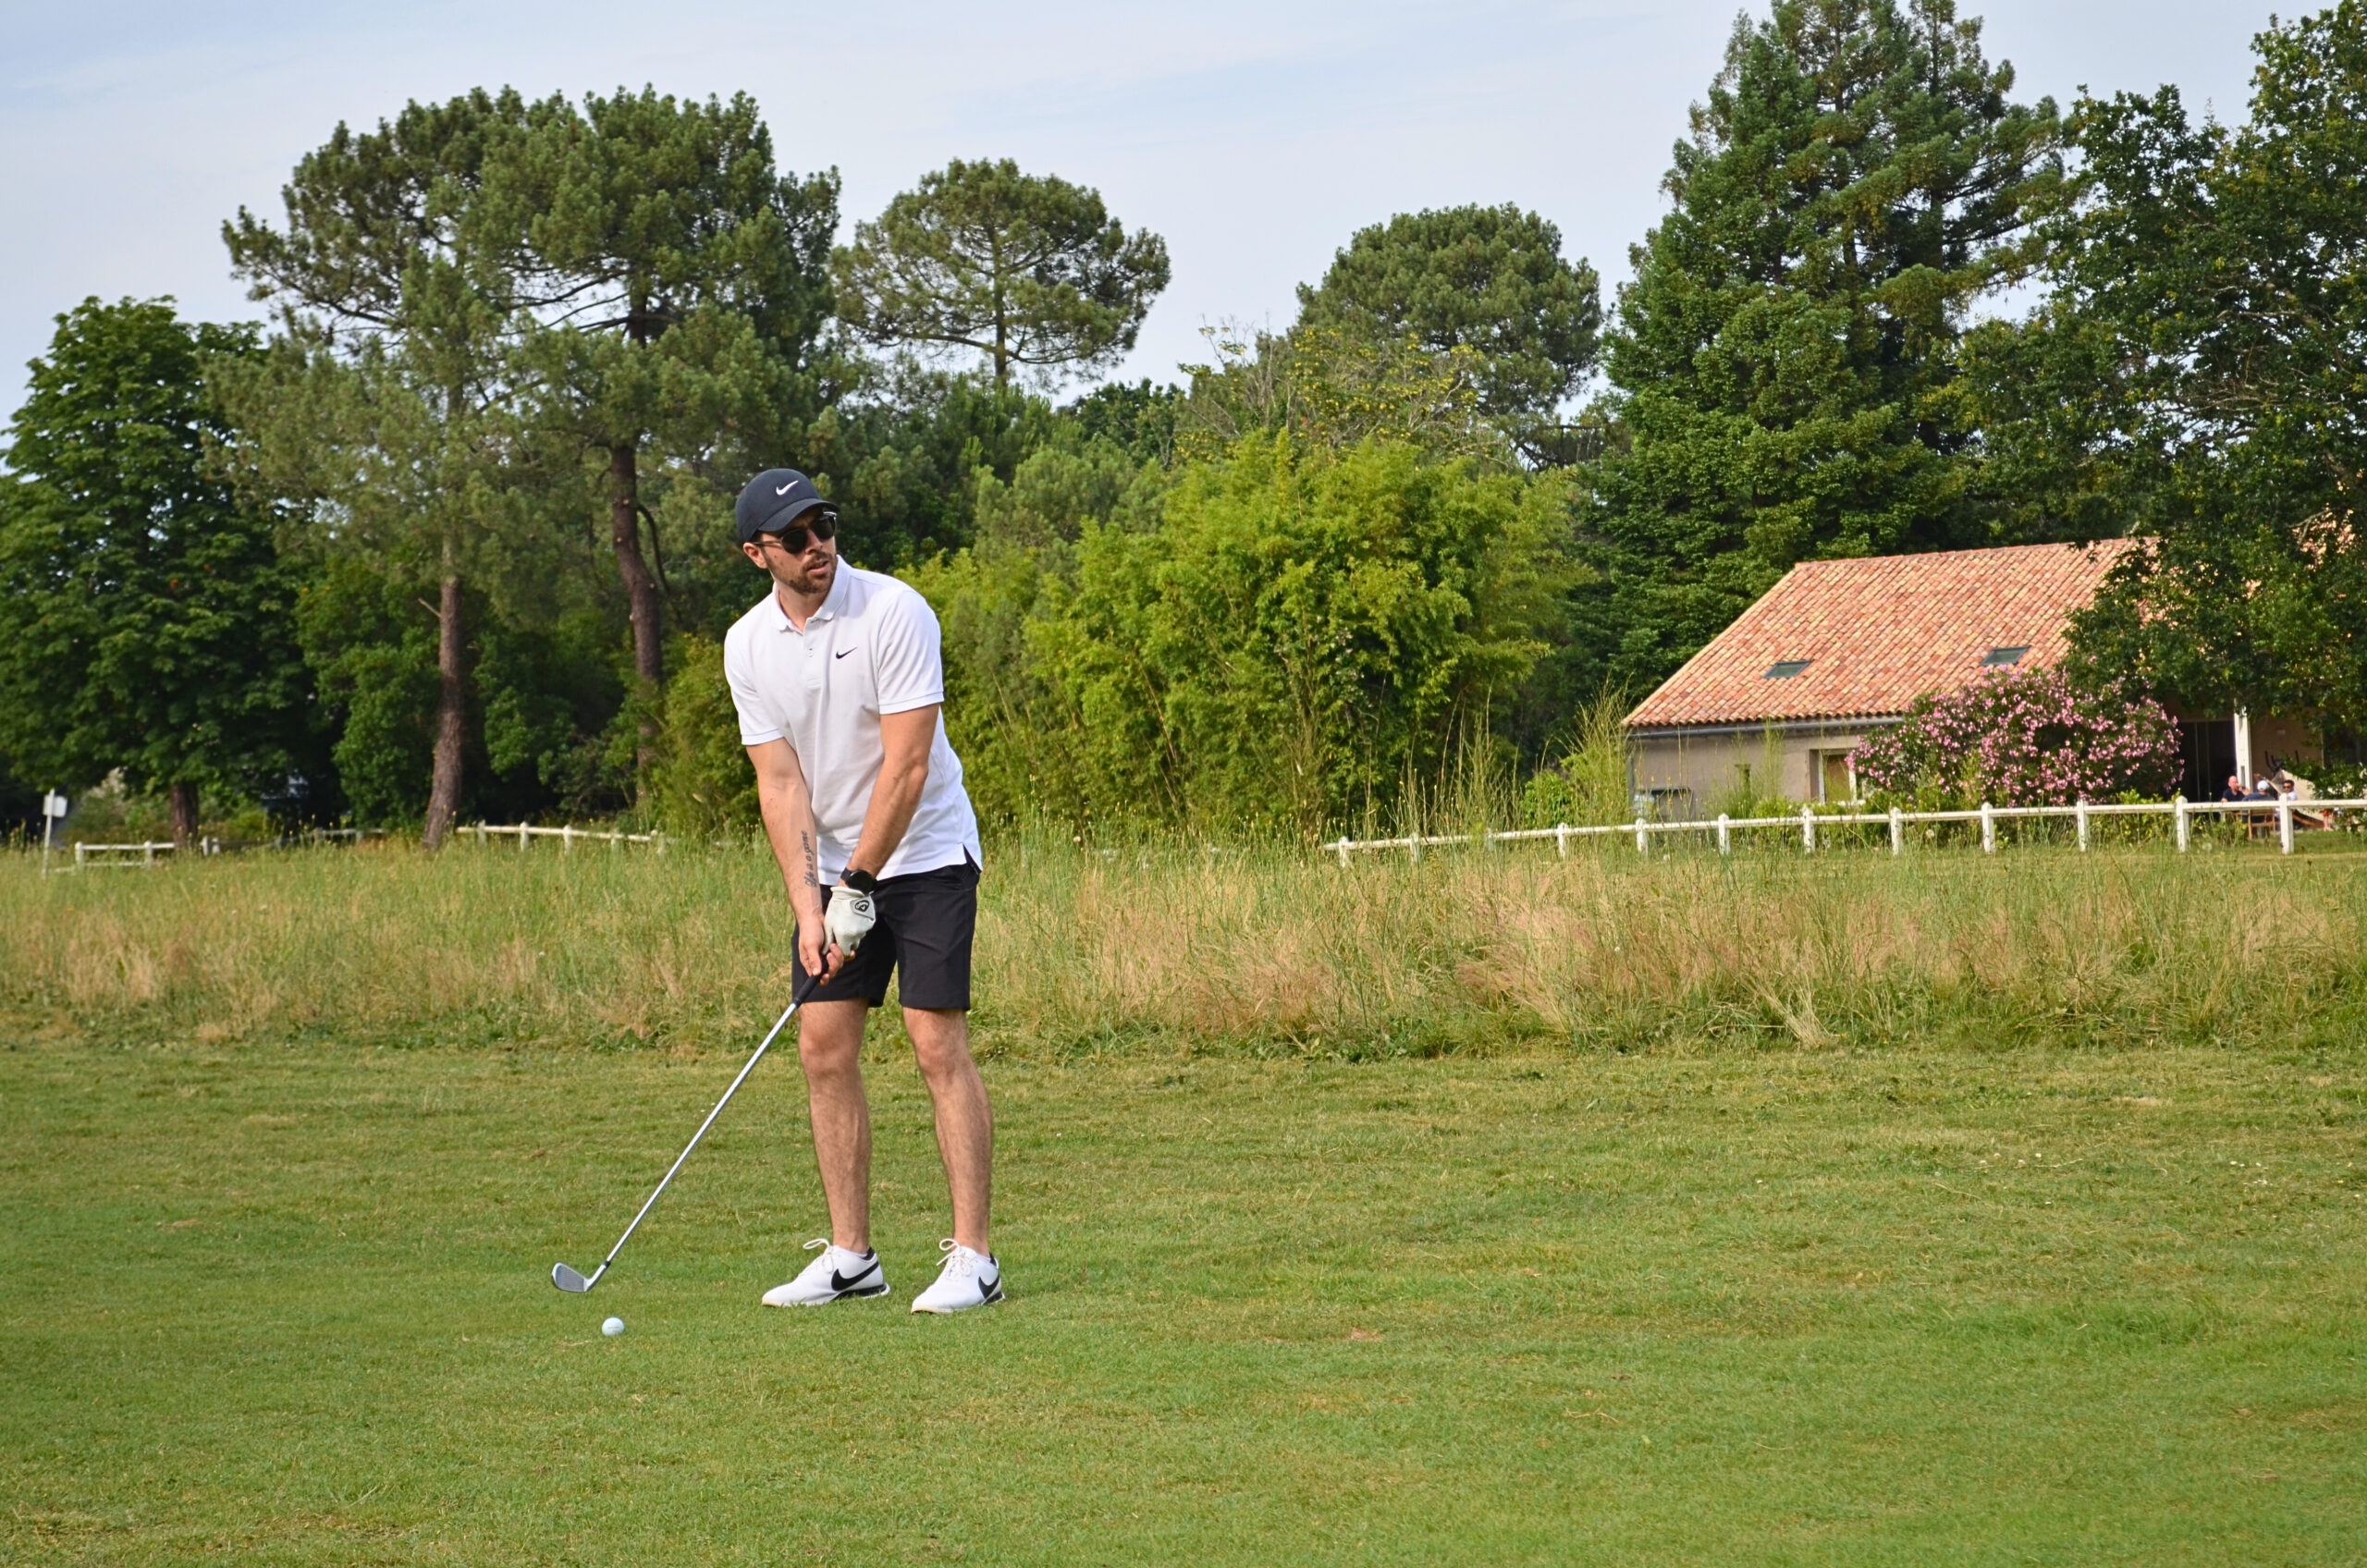 joueur de golf se prépare à jouer un coup sur un parcours de golf